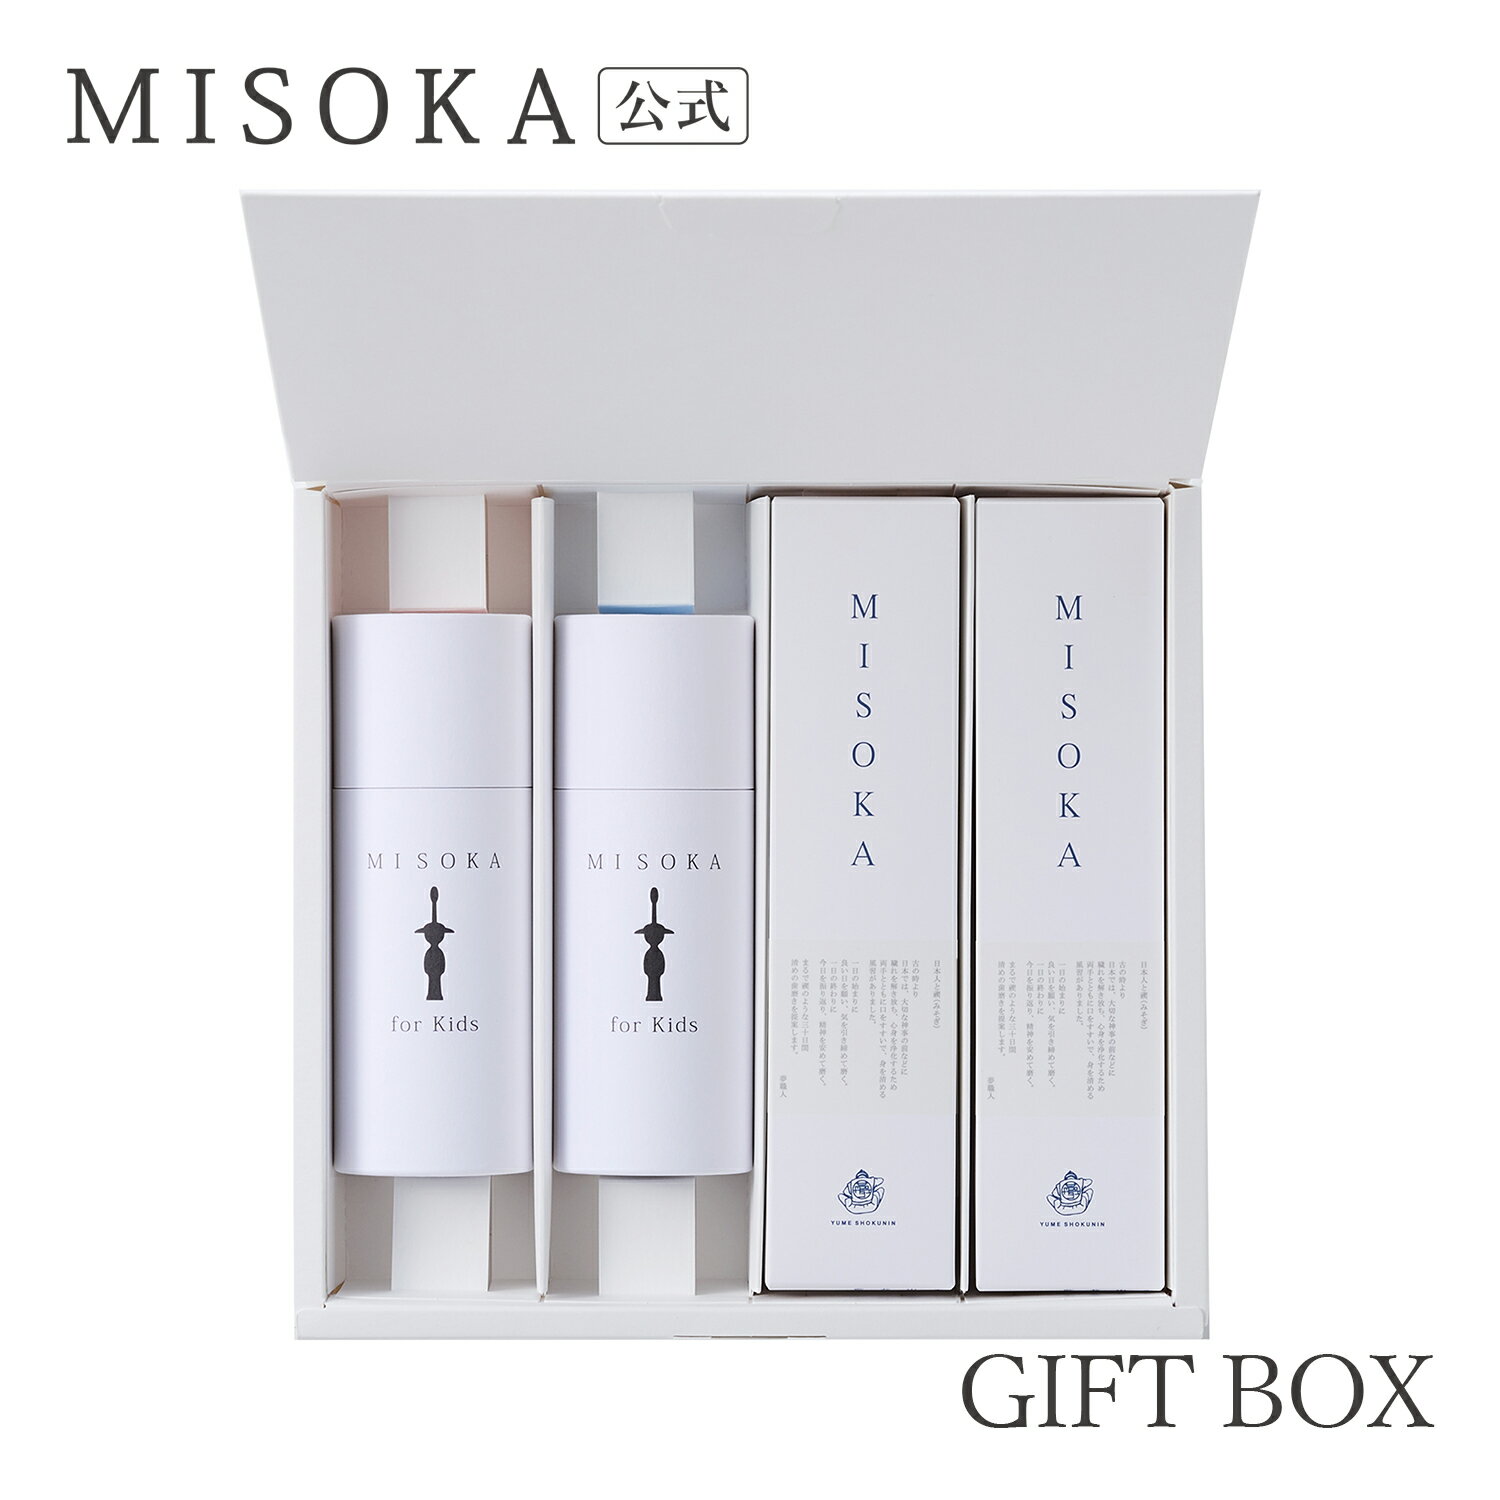 MISOKA(ミソカ) 歯ブラシ MISOKA for Kidsと MISOKA基本の歯ブラシのセット　10000円  日本製 